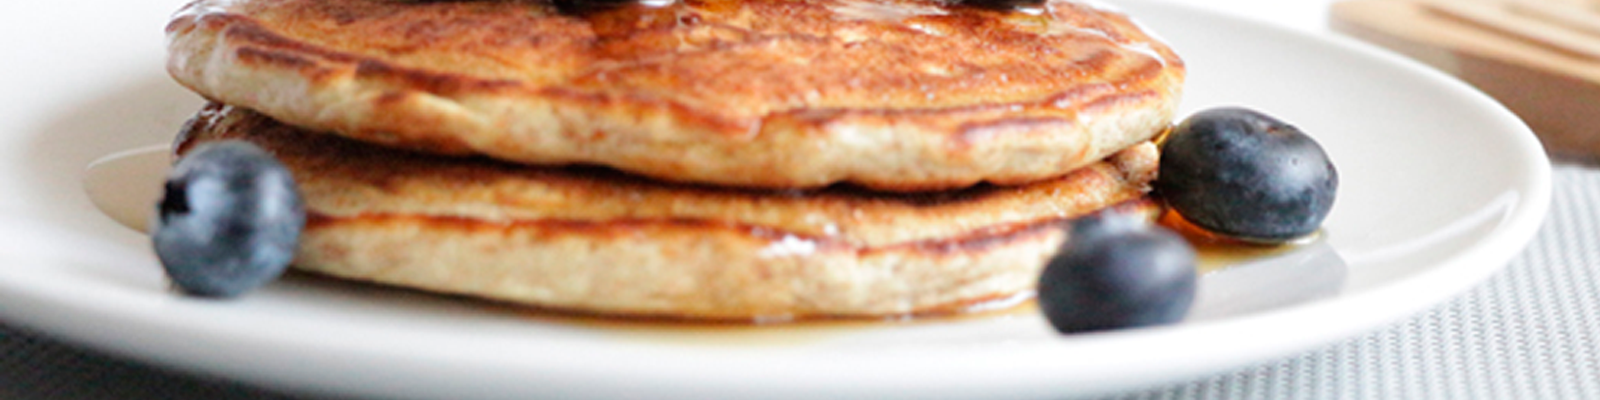 Pancakes proteicos con arándanos